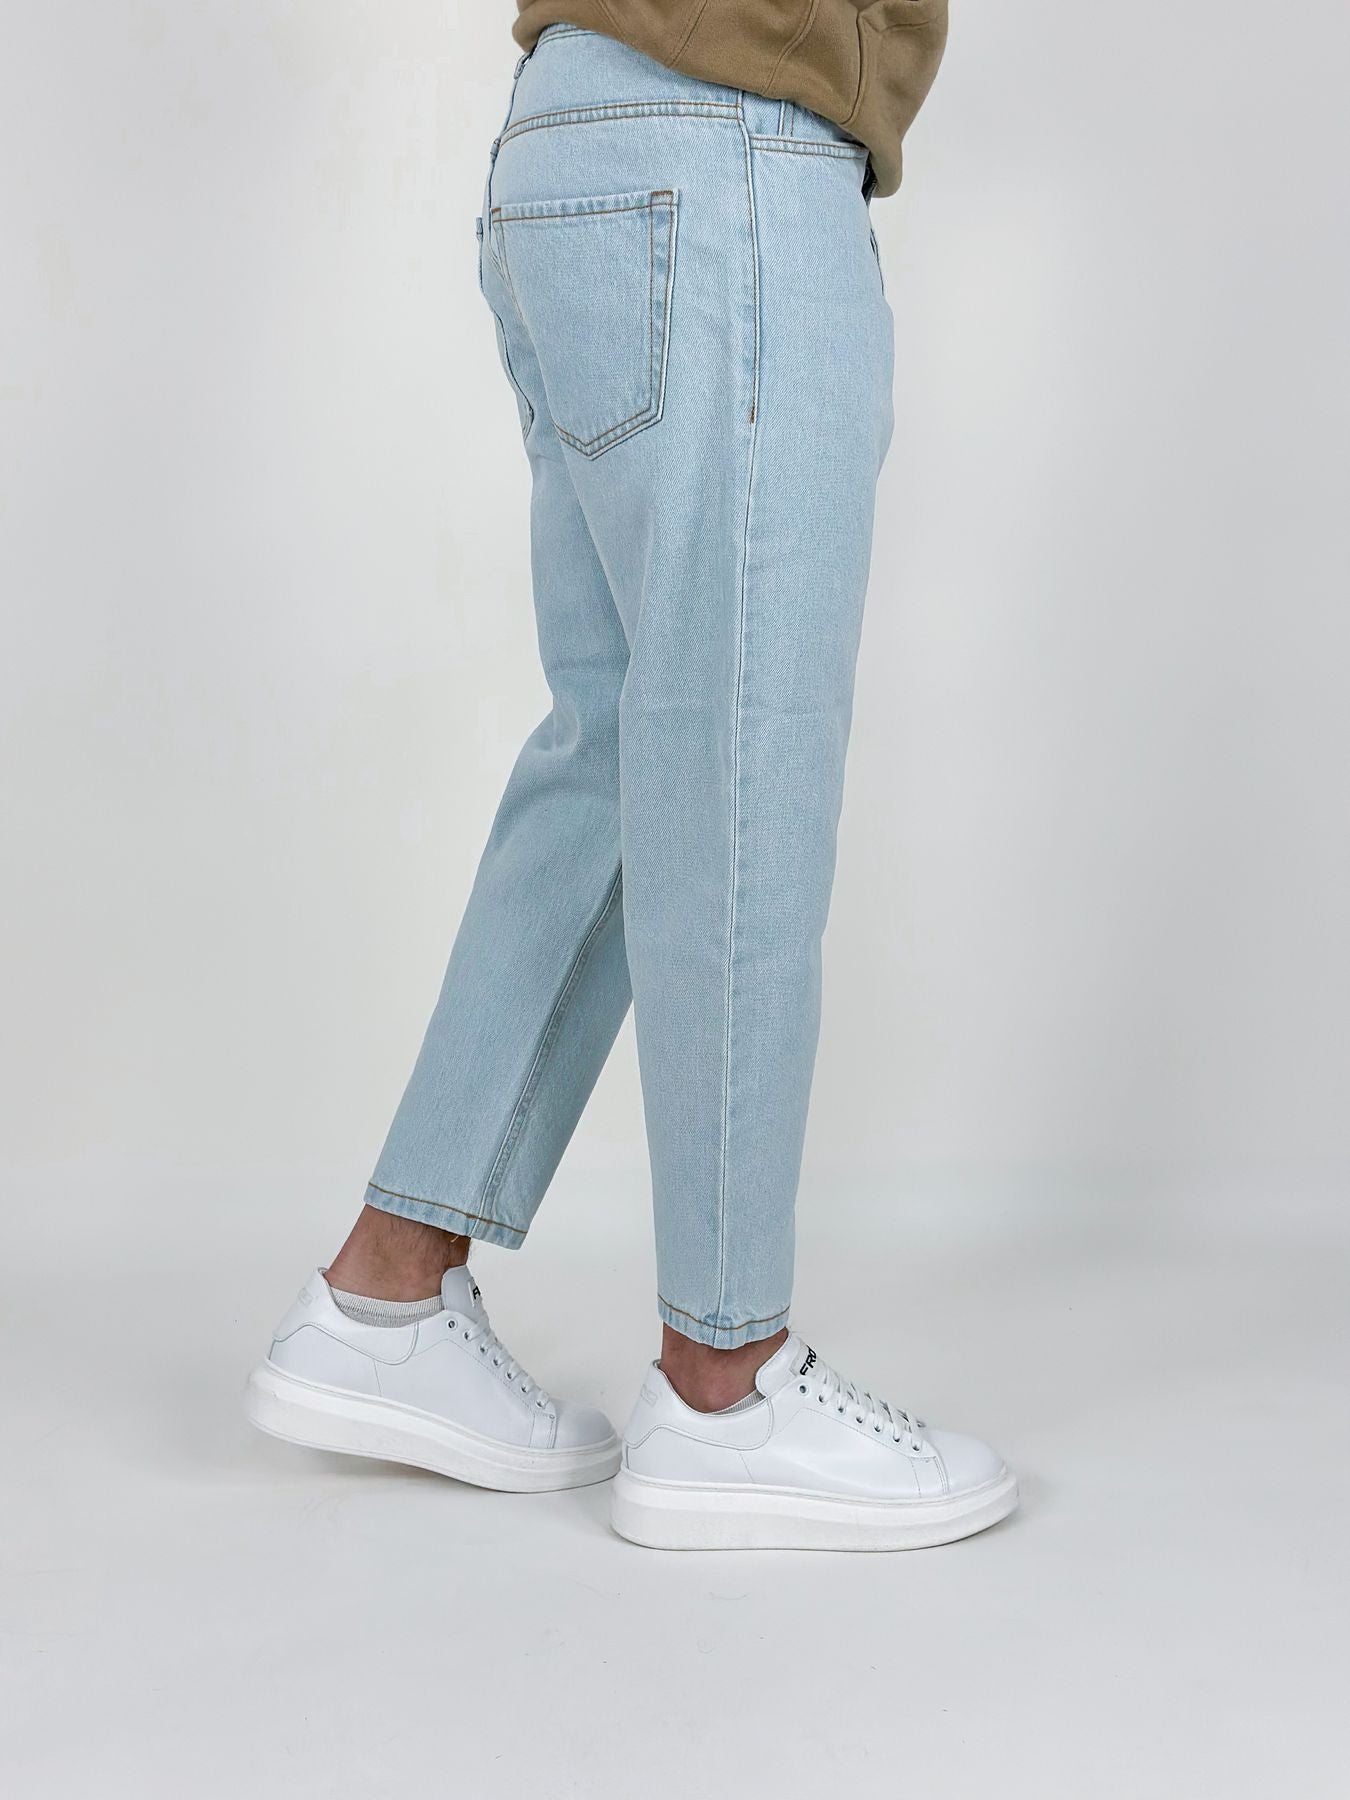 Jeans Oxford, modello capri